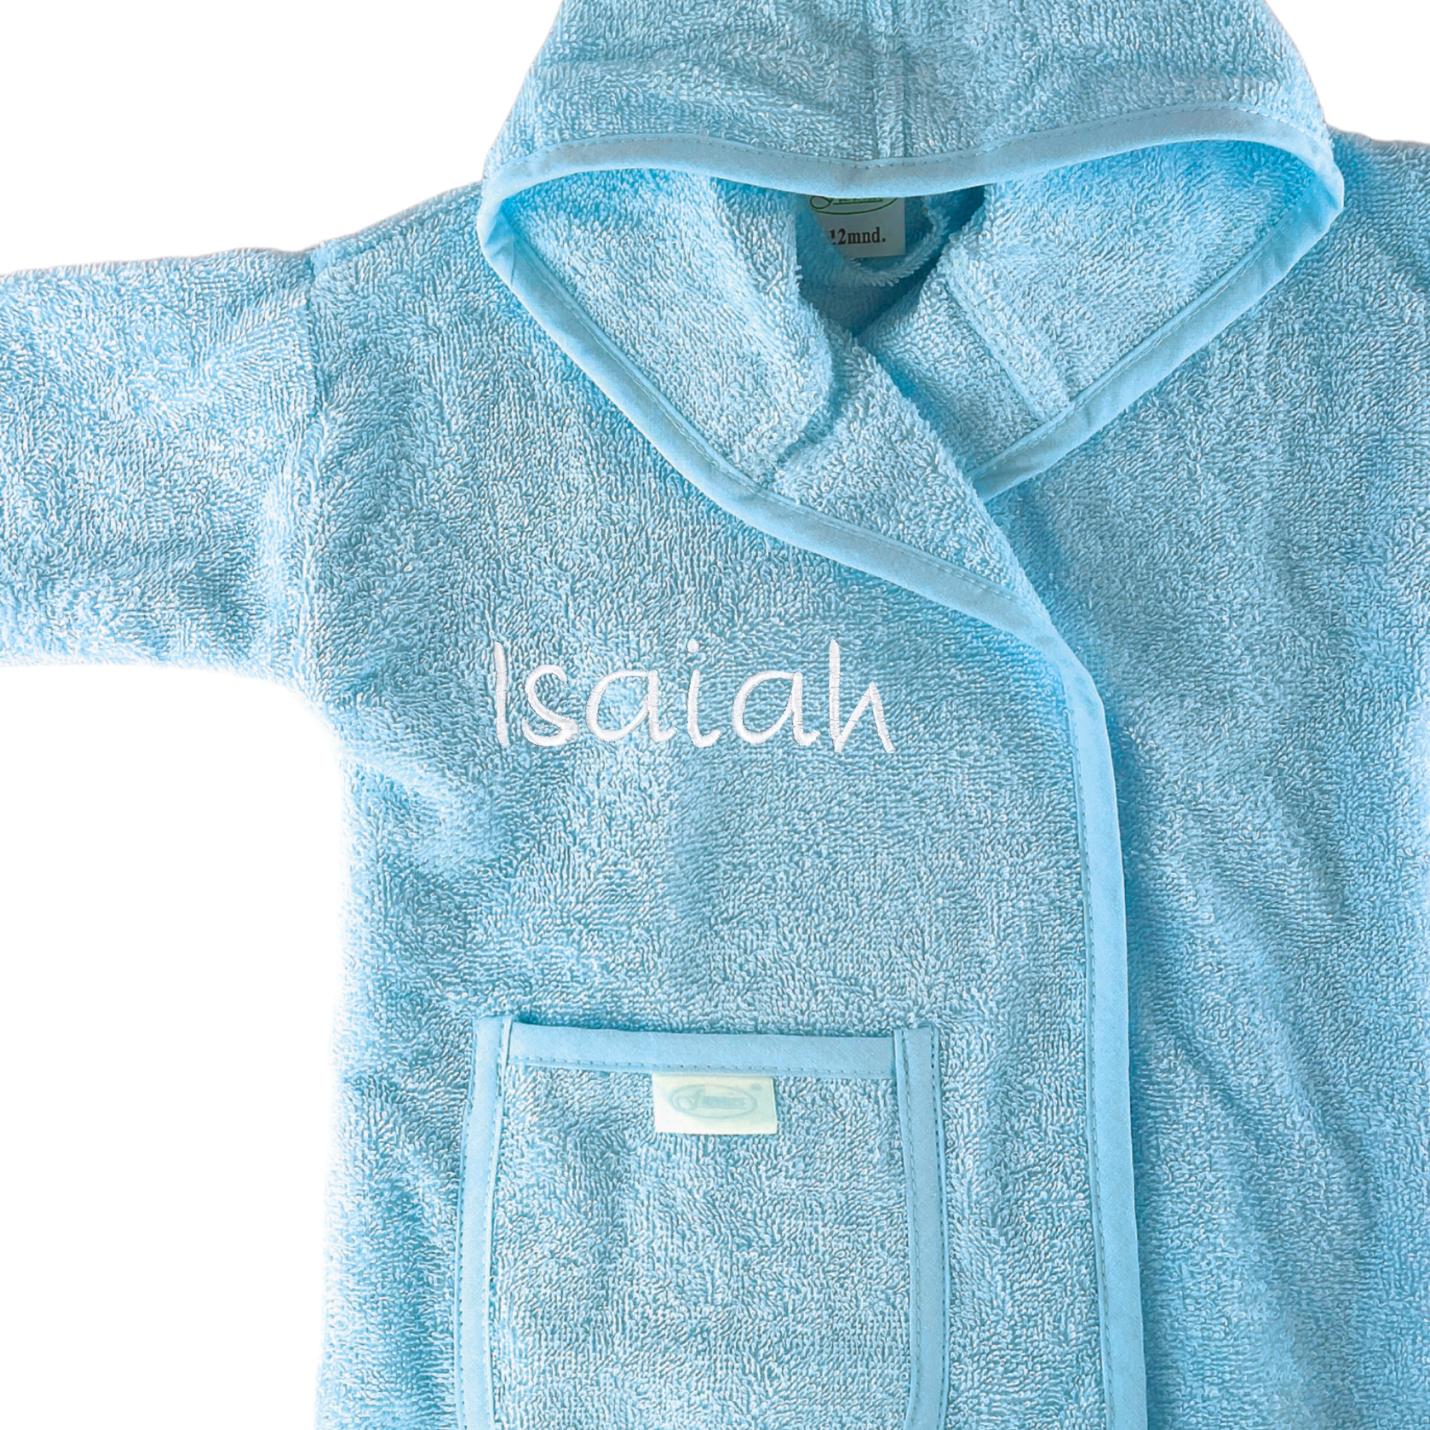 Baby badjas met naam | 1-2 jaar - Silkblue